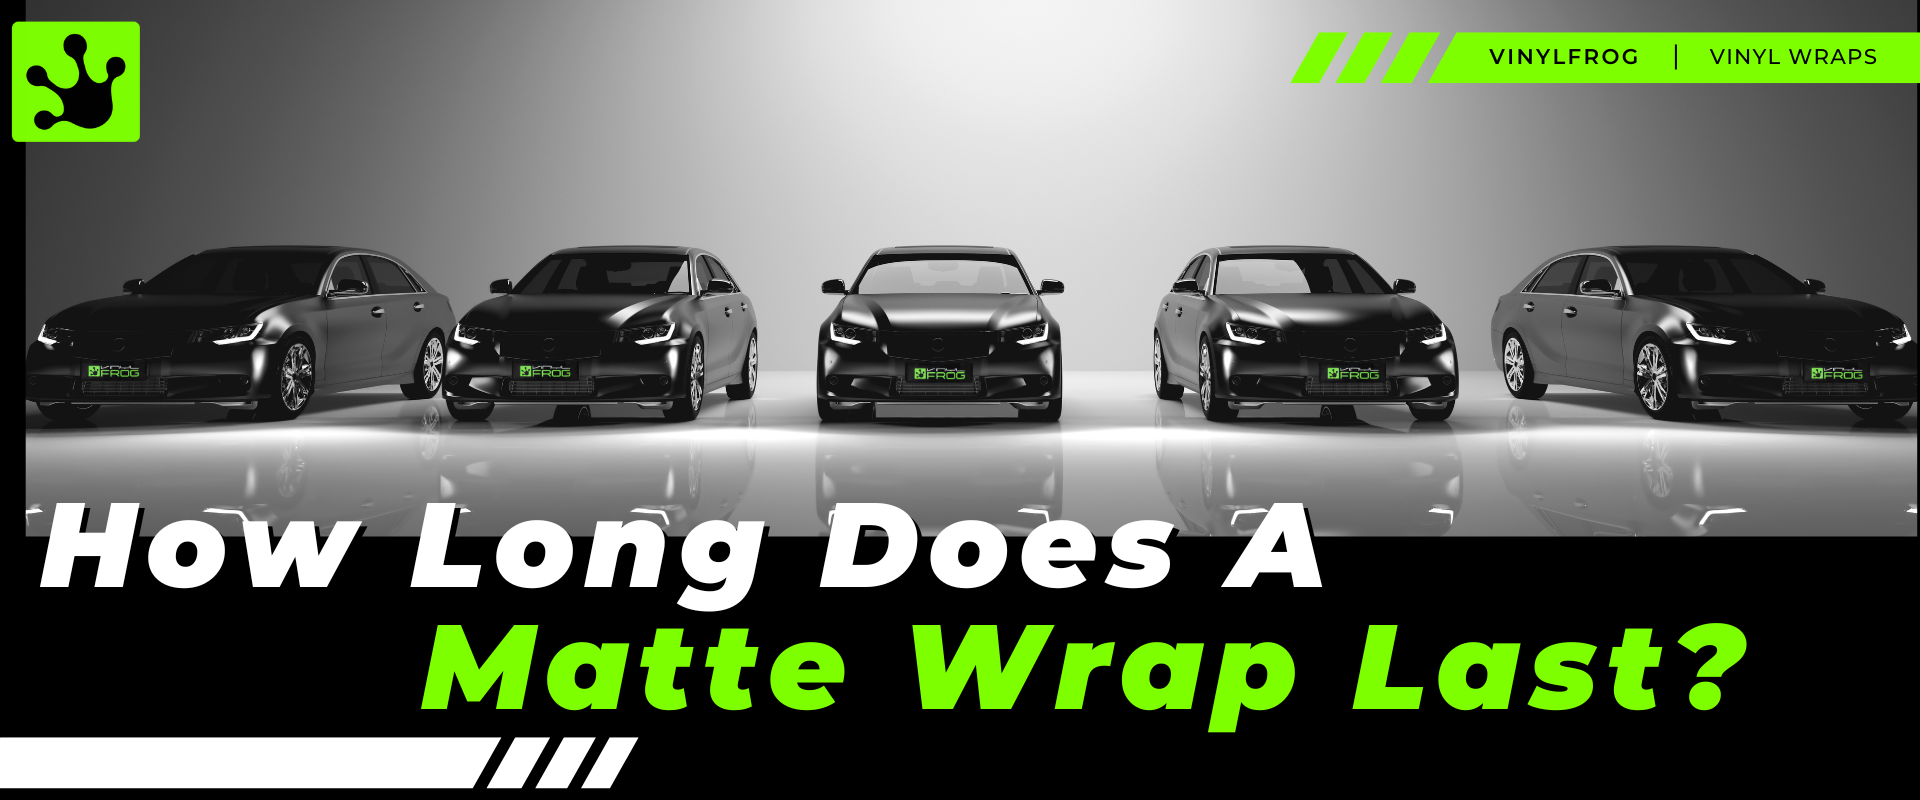 How Long Does A Matte Wrap Last?